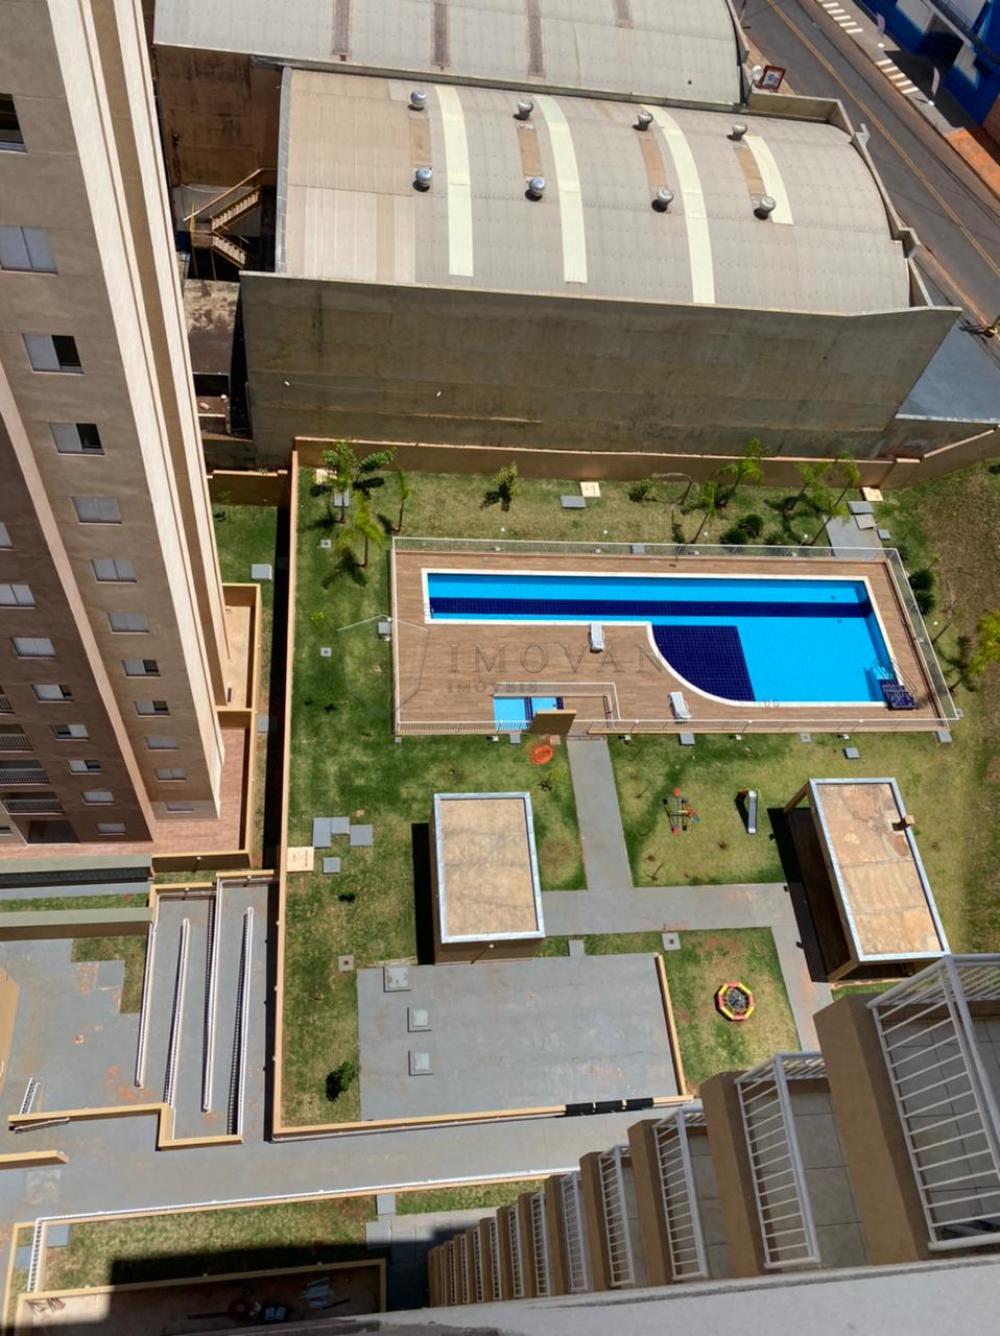 Comprar Apartamento / Padrão em Ribeirão Preto R$ 220.000,00 - Foto 13